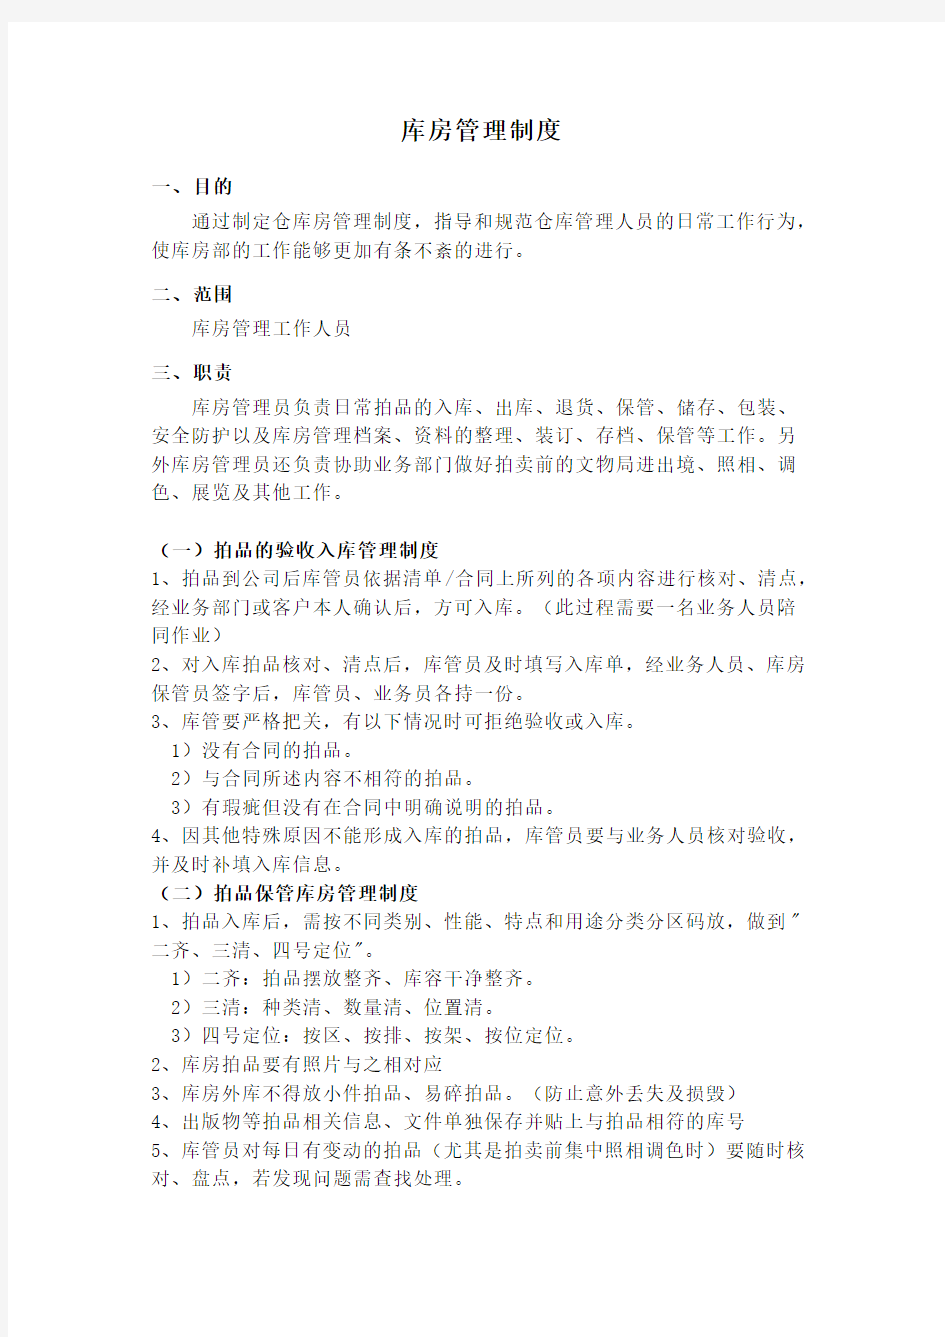 中国嘉德北京保利等艺术品拍卖公司库房管理制度